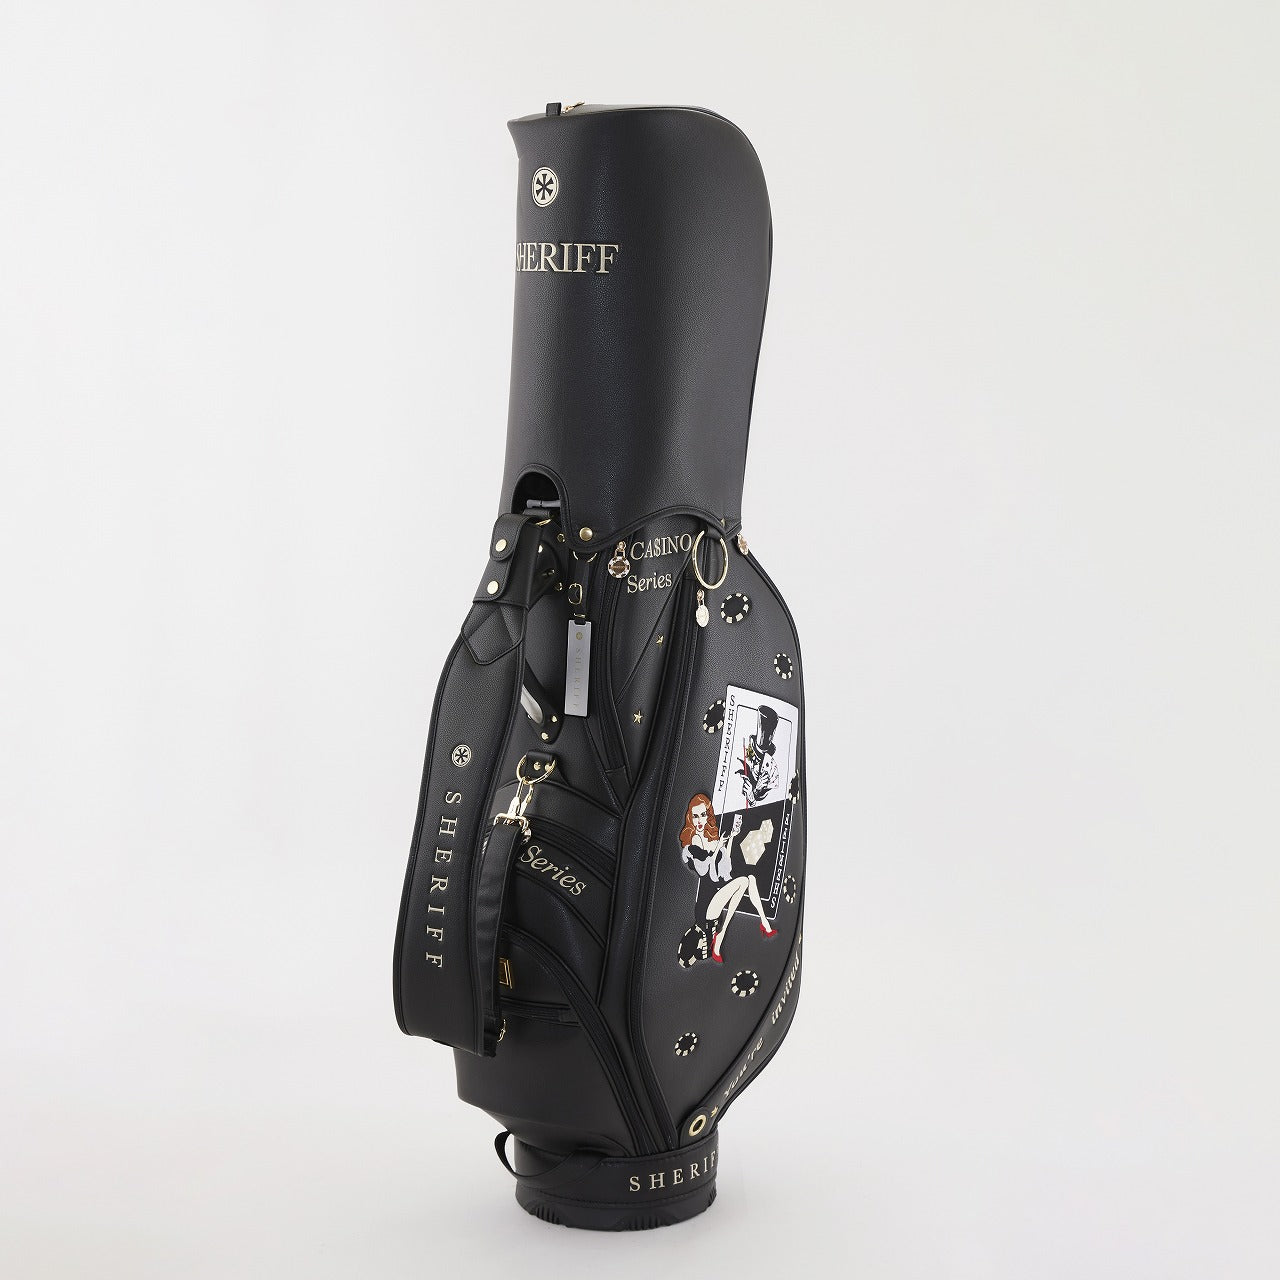 シェリフ ゴルフ SHERIFF SCA-009 スタンダードモデル カジノ シリーズ キャディバッグ 数量50本限定モデル 9.5インチ ゴルフ バッグ ホワイト/ブラック